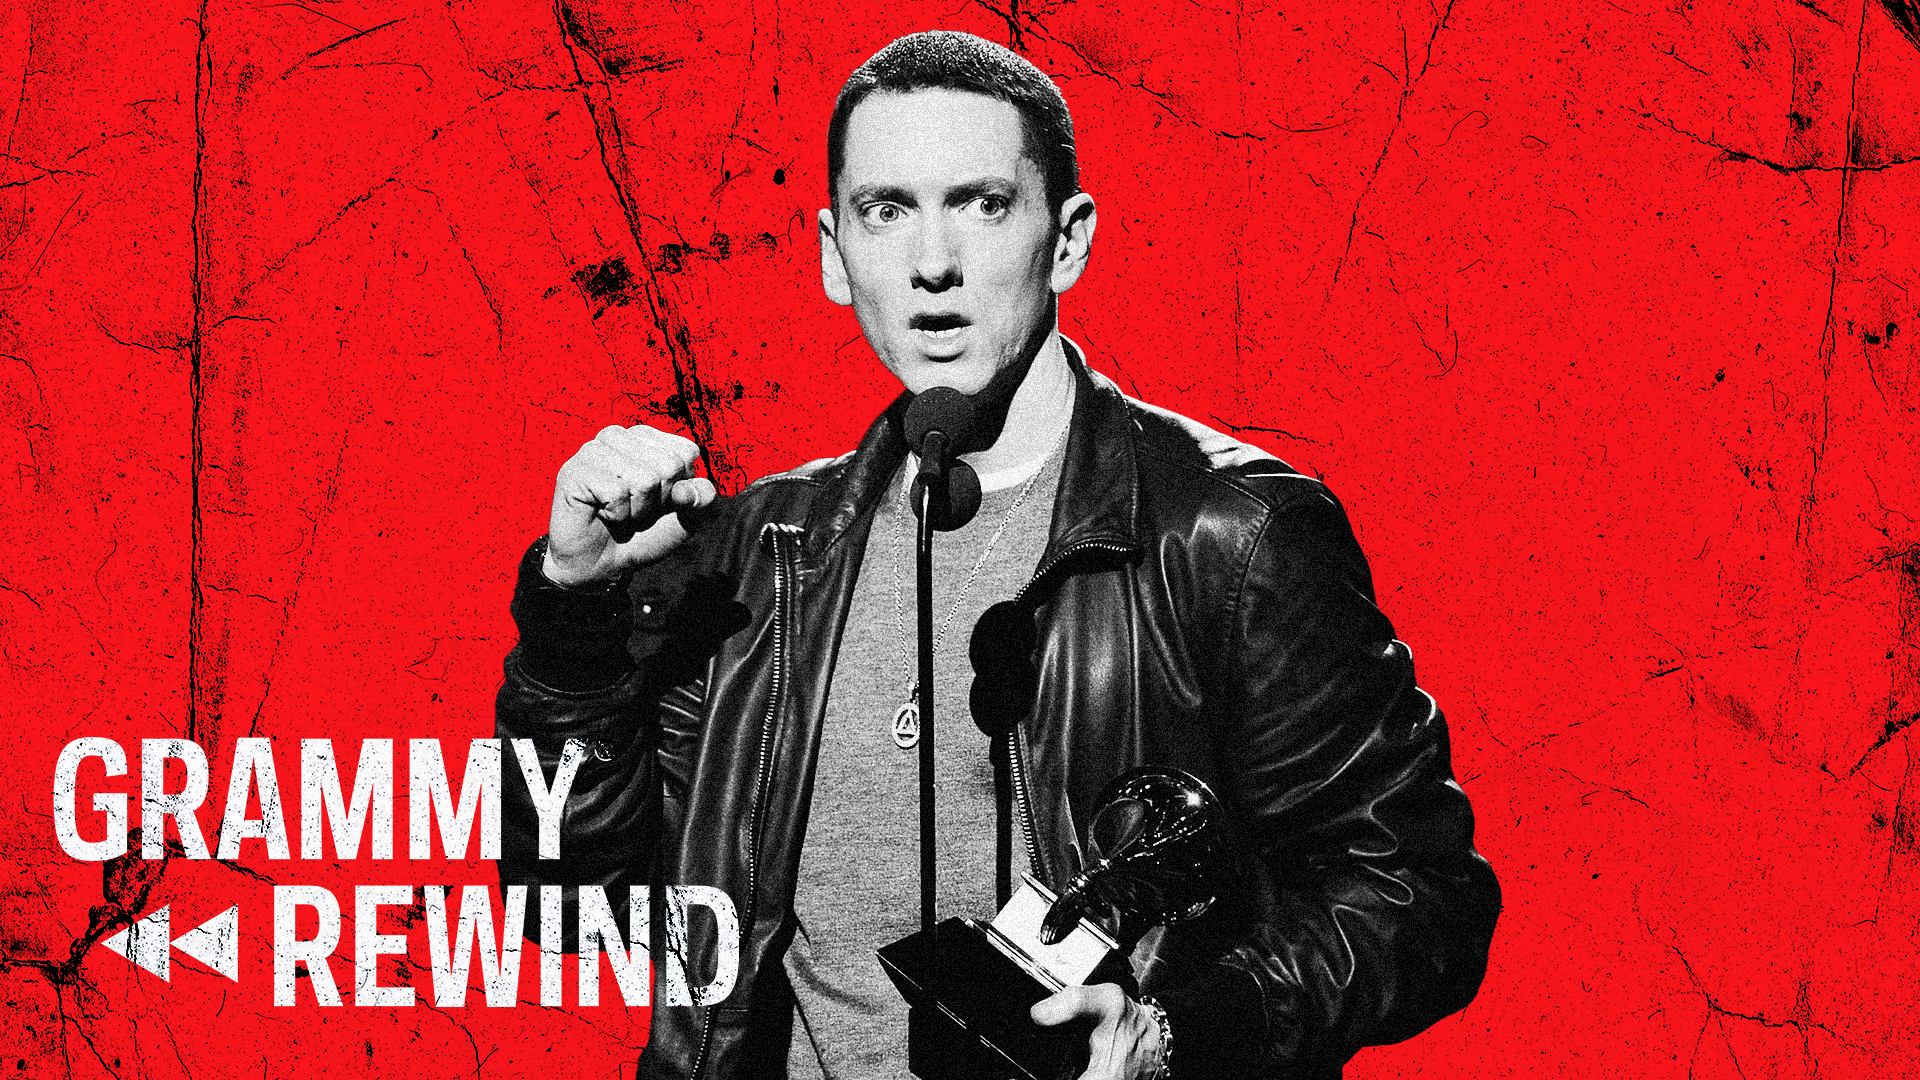 Watch Eminem Show Love to Detroit And Rihanna During Best Rap Album Win In 2011 | GRAMMY Rewind